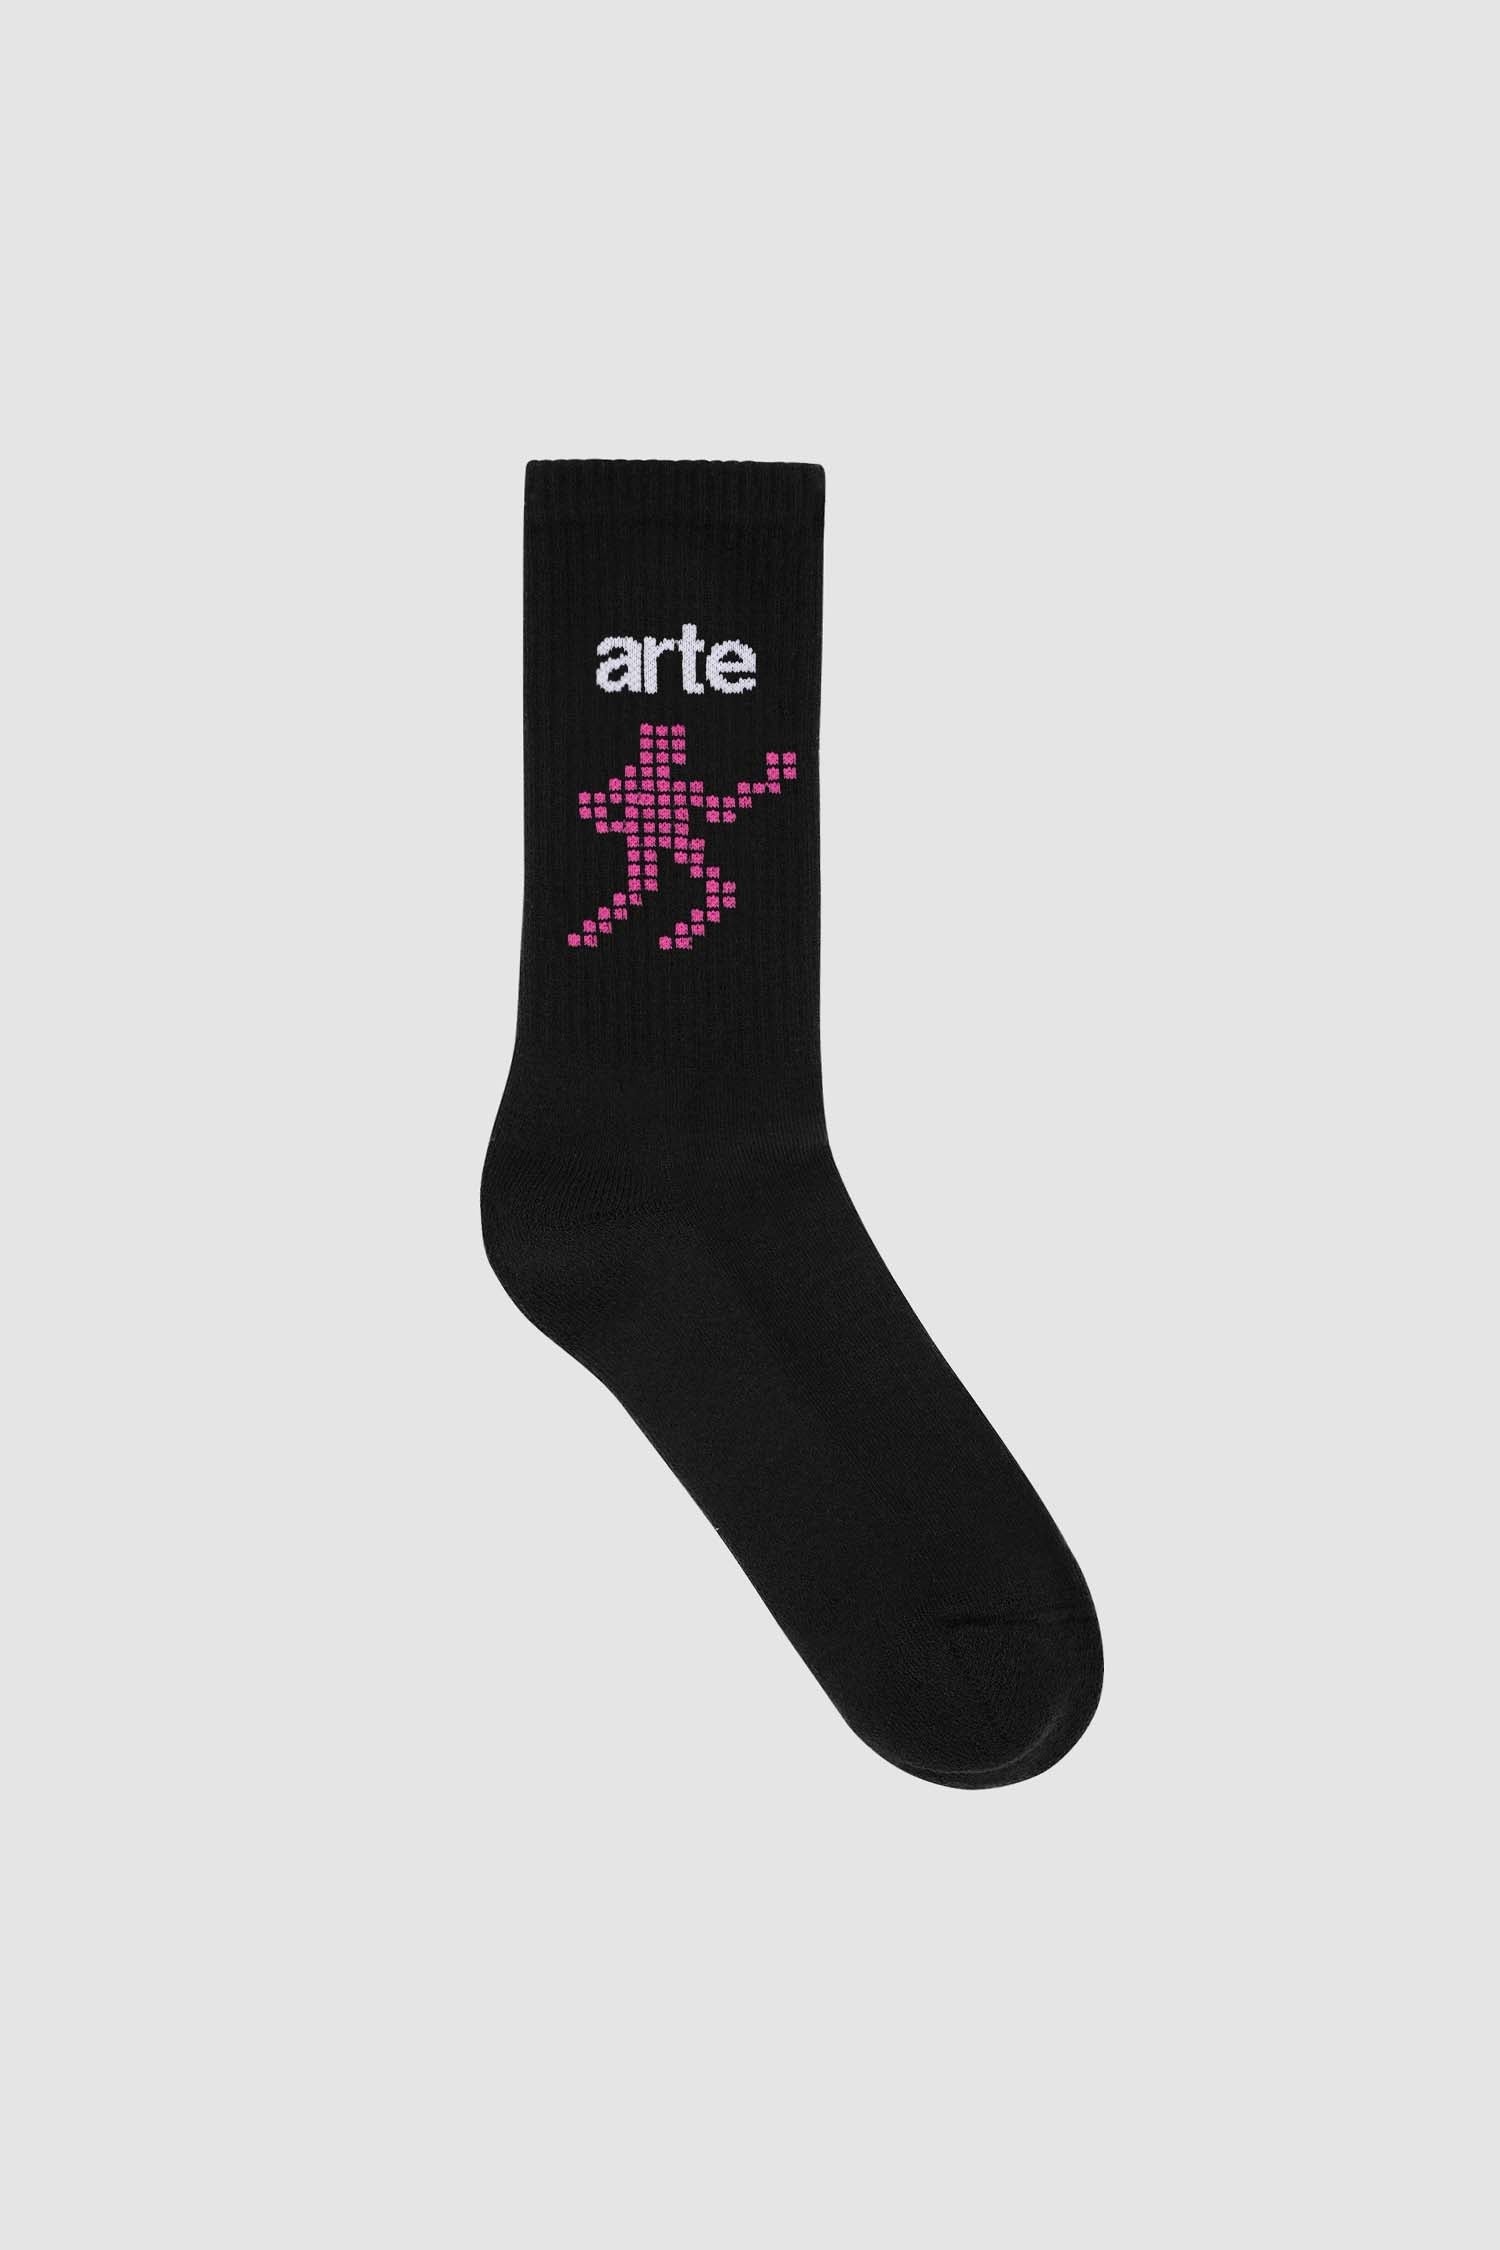 Arte Runner Socks - Black